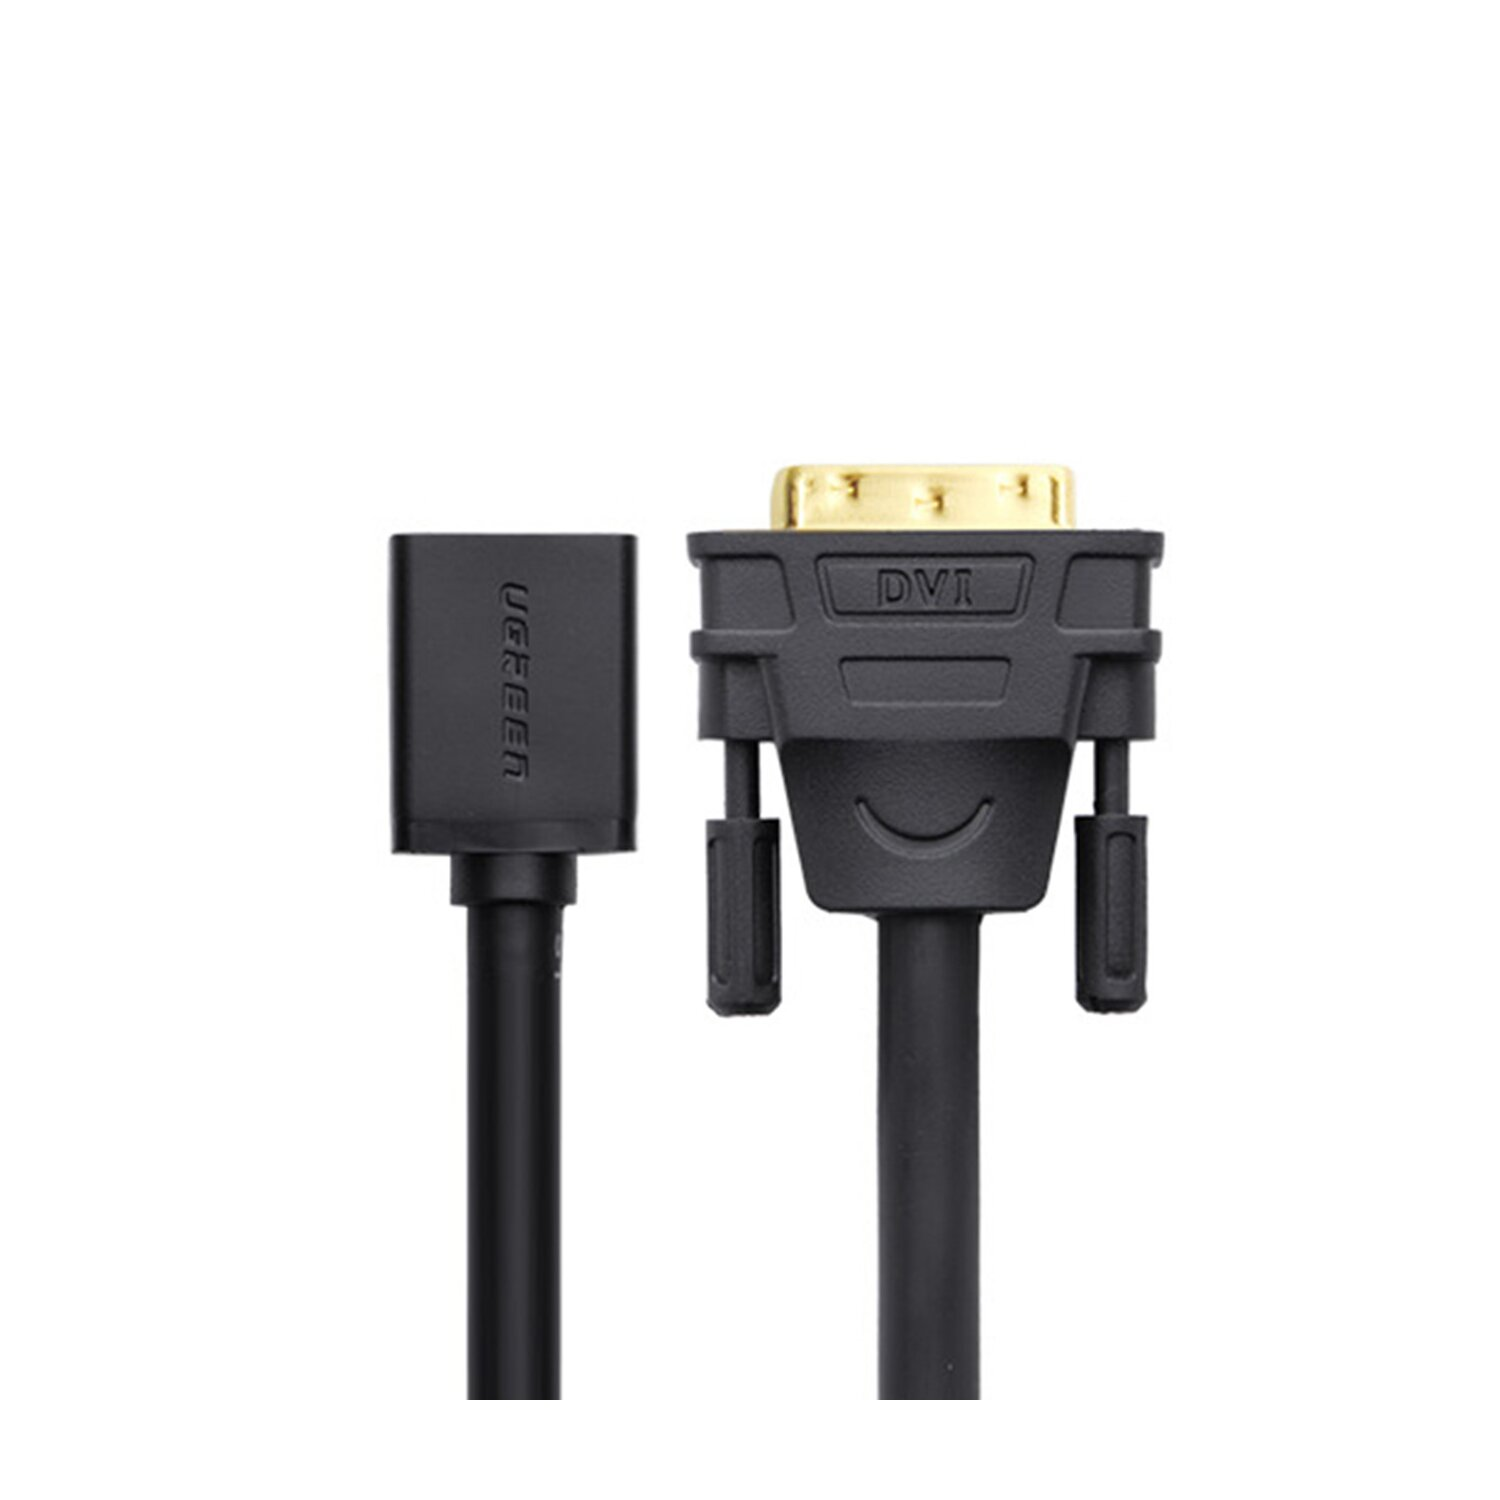 UGREEN (männlich) DVI Schwarz HDMI (weiblich) Kabeladapter, - 0,15m